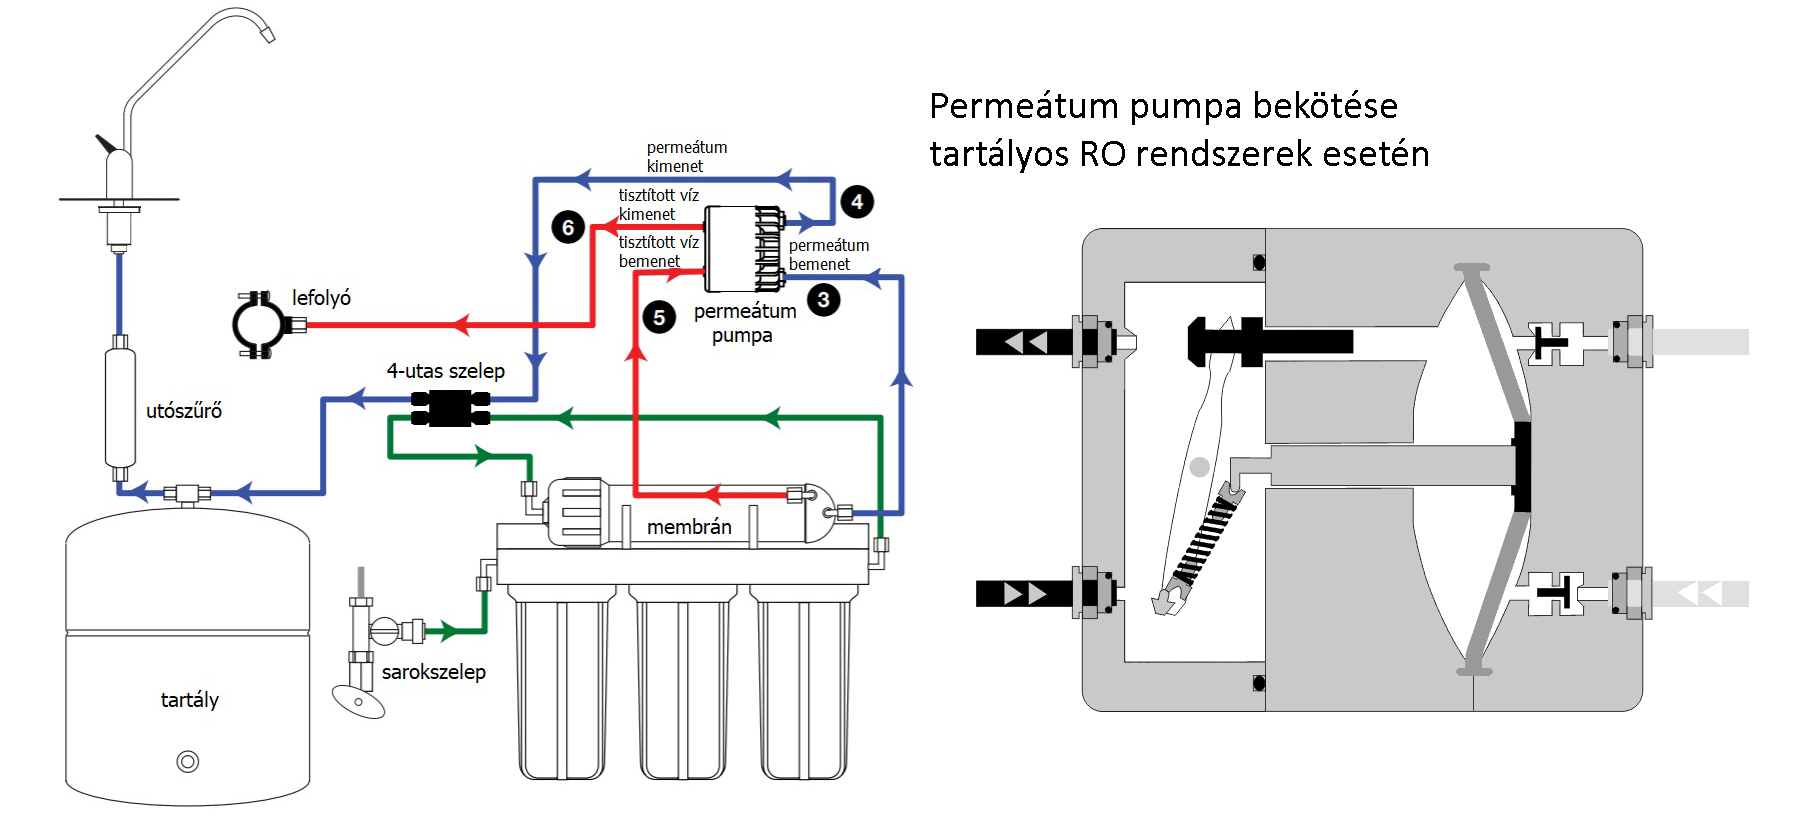 Permeátum pumpa bekötése tartályos RO víztisztítóhoz - fordított ozmózis